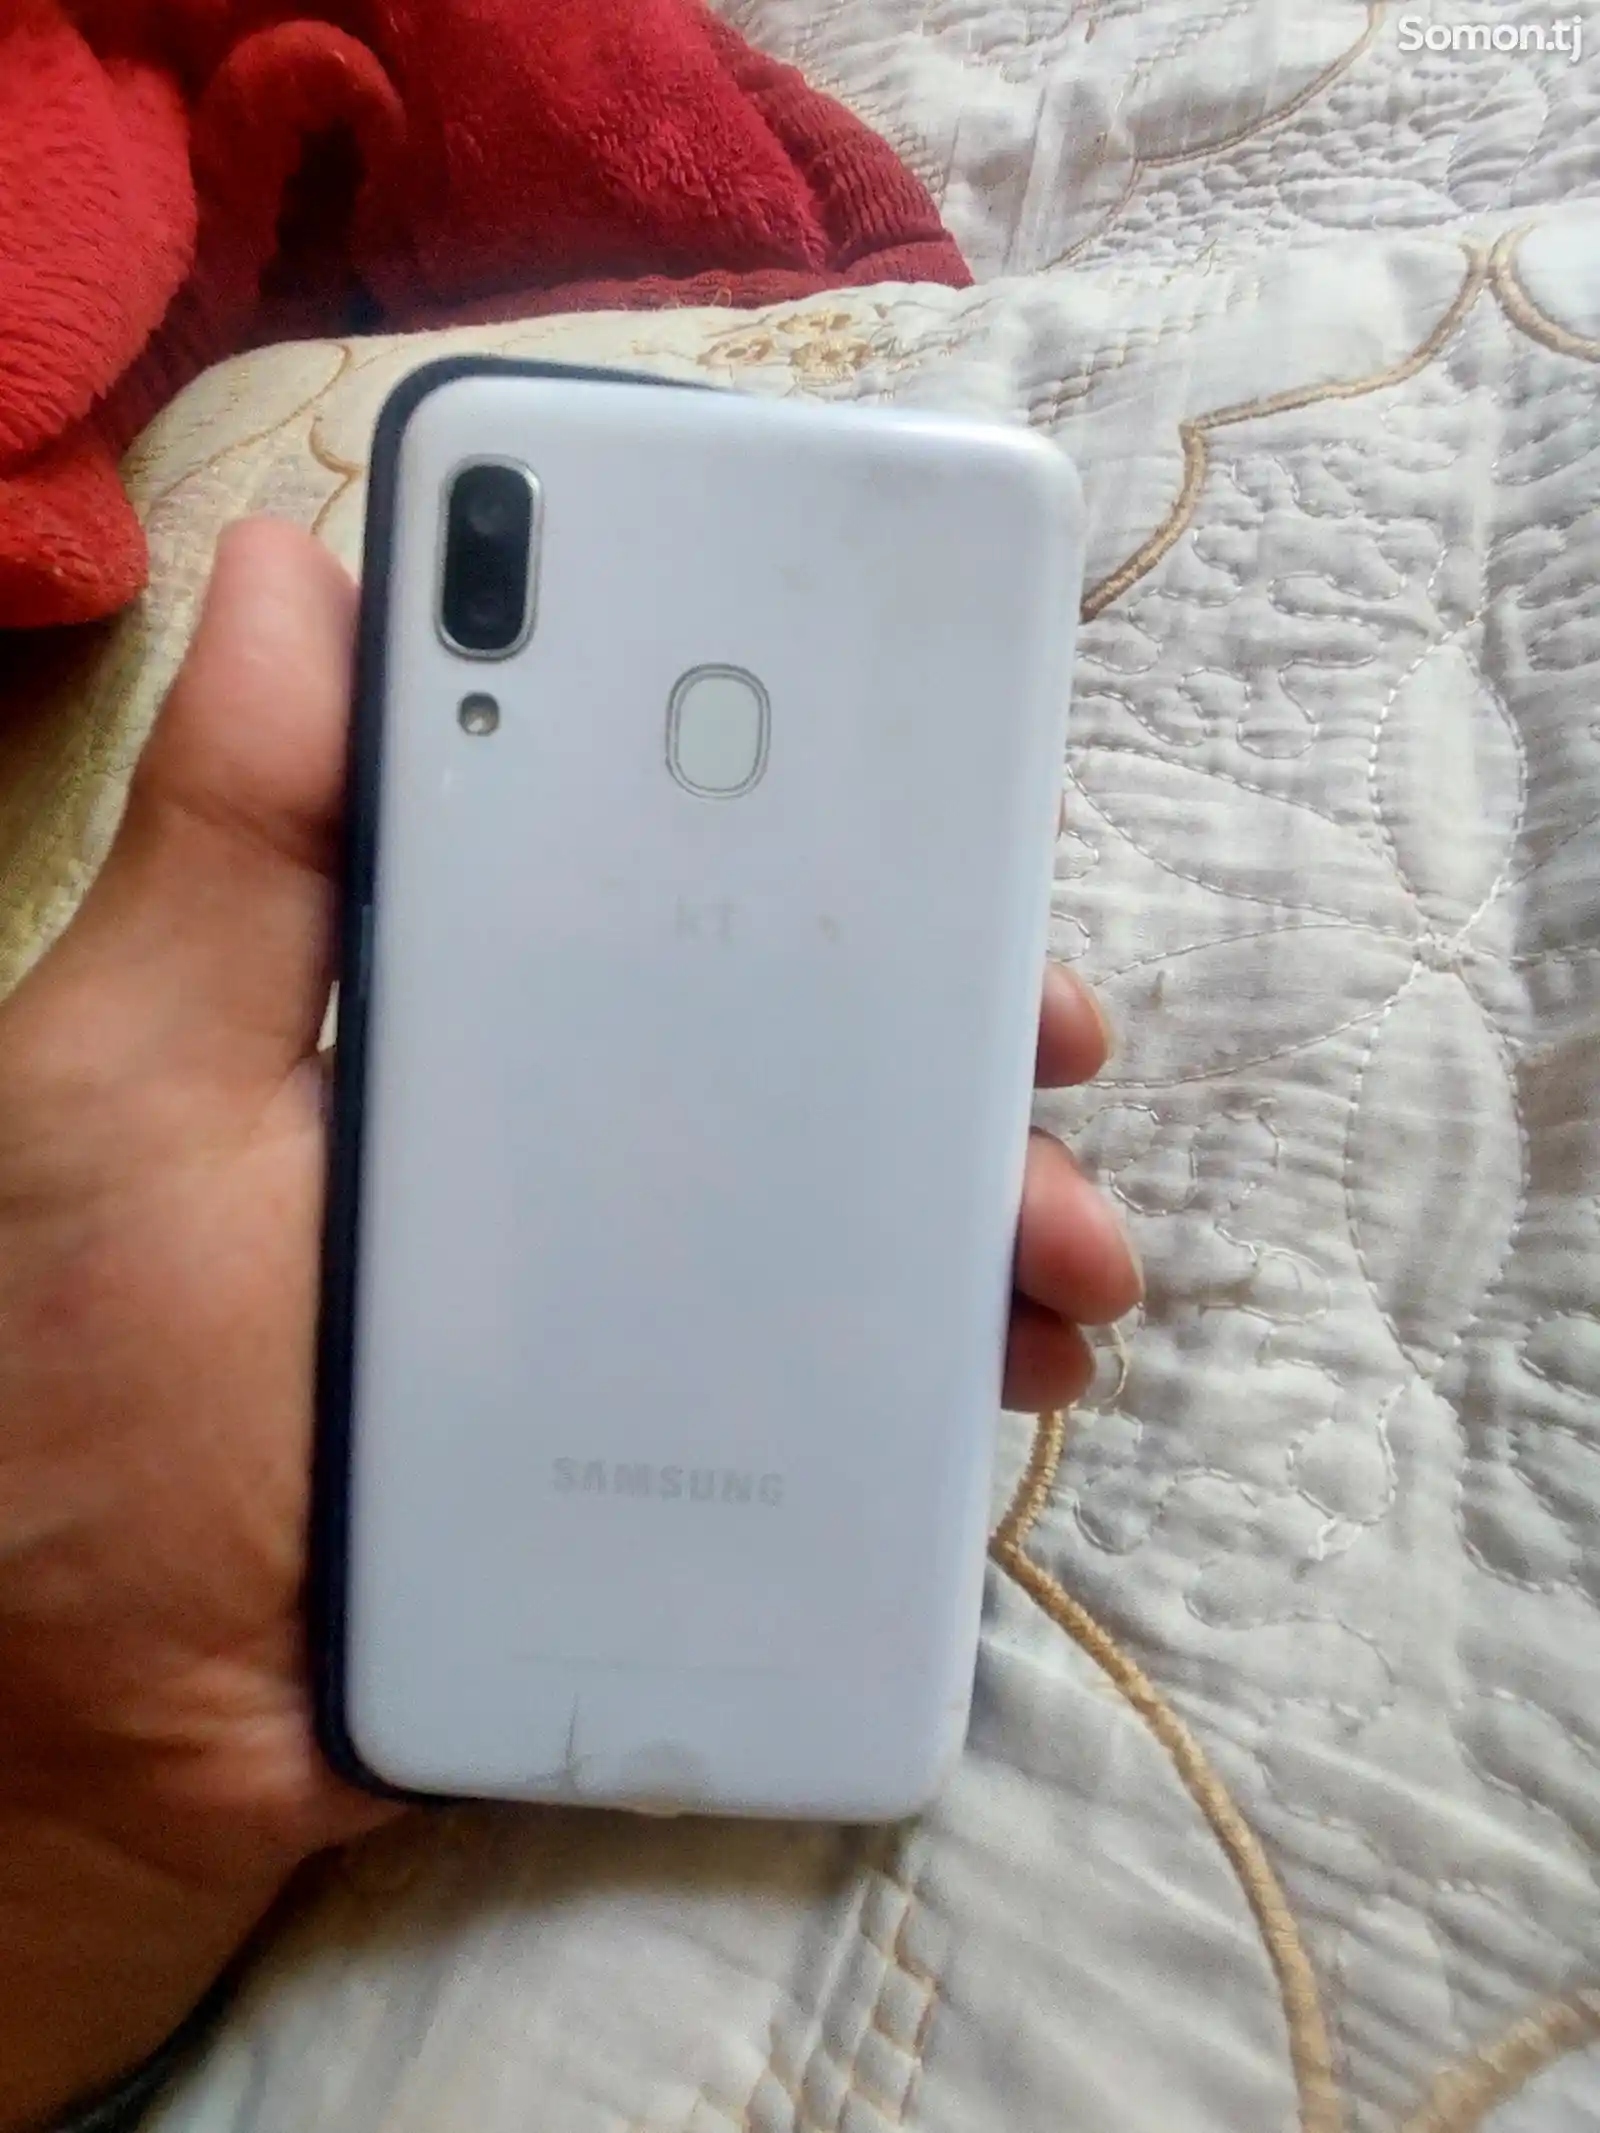 Samsung Galaxy A40-4